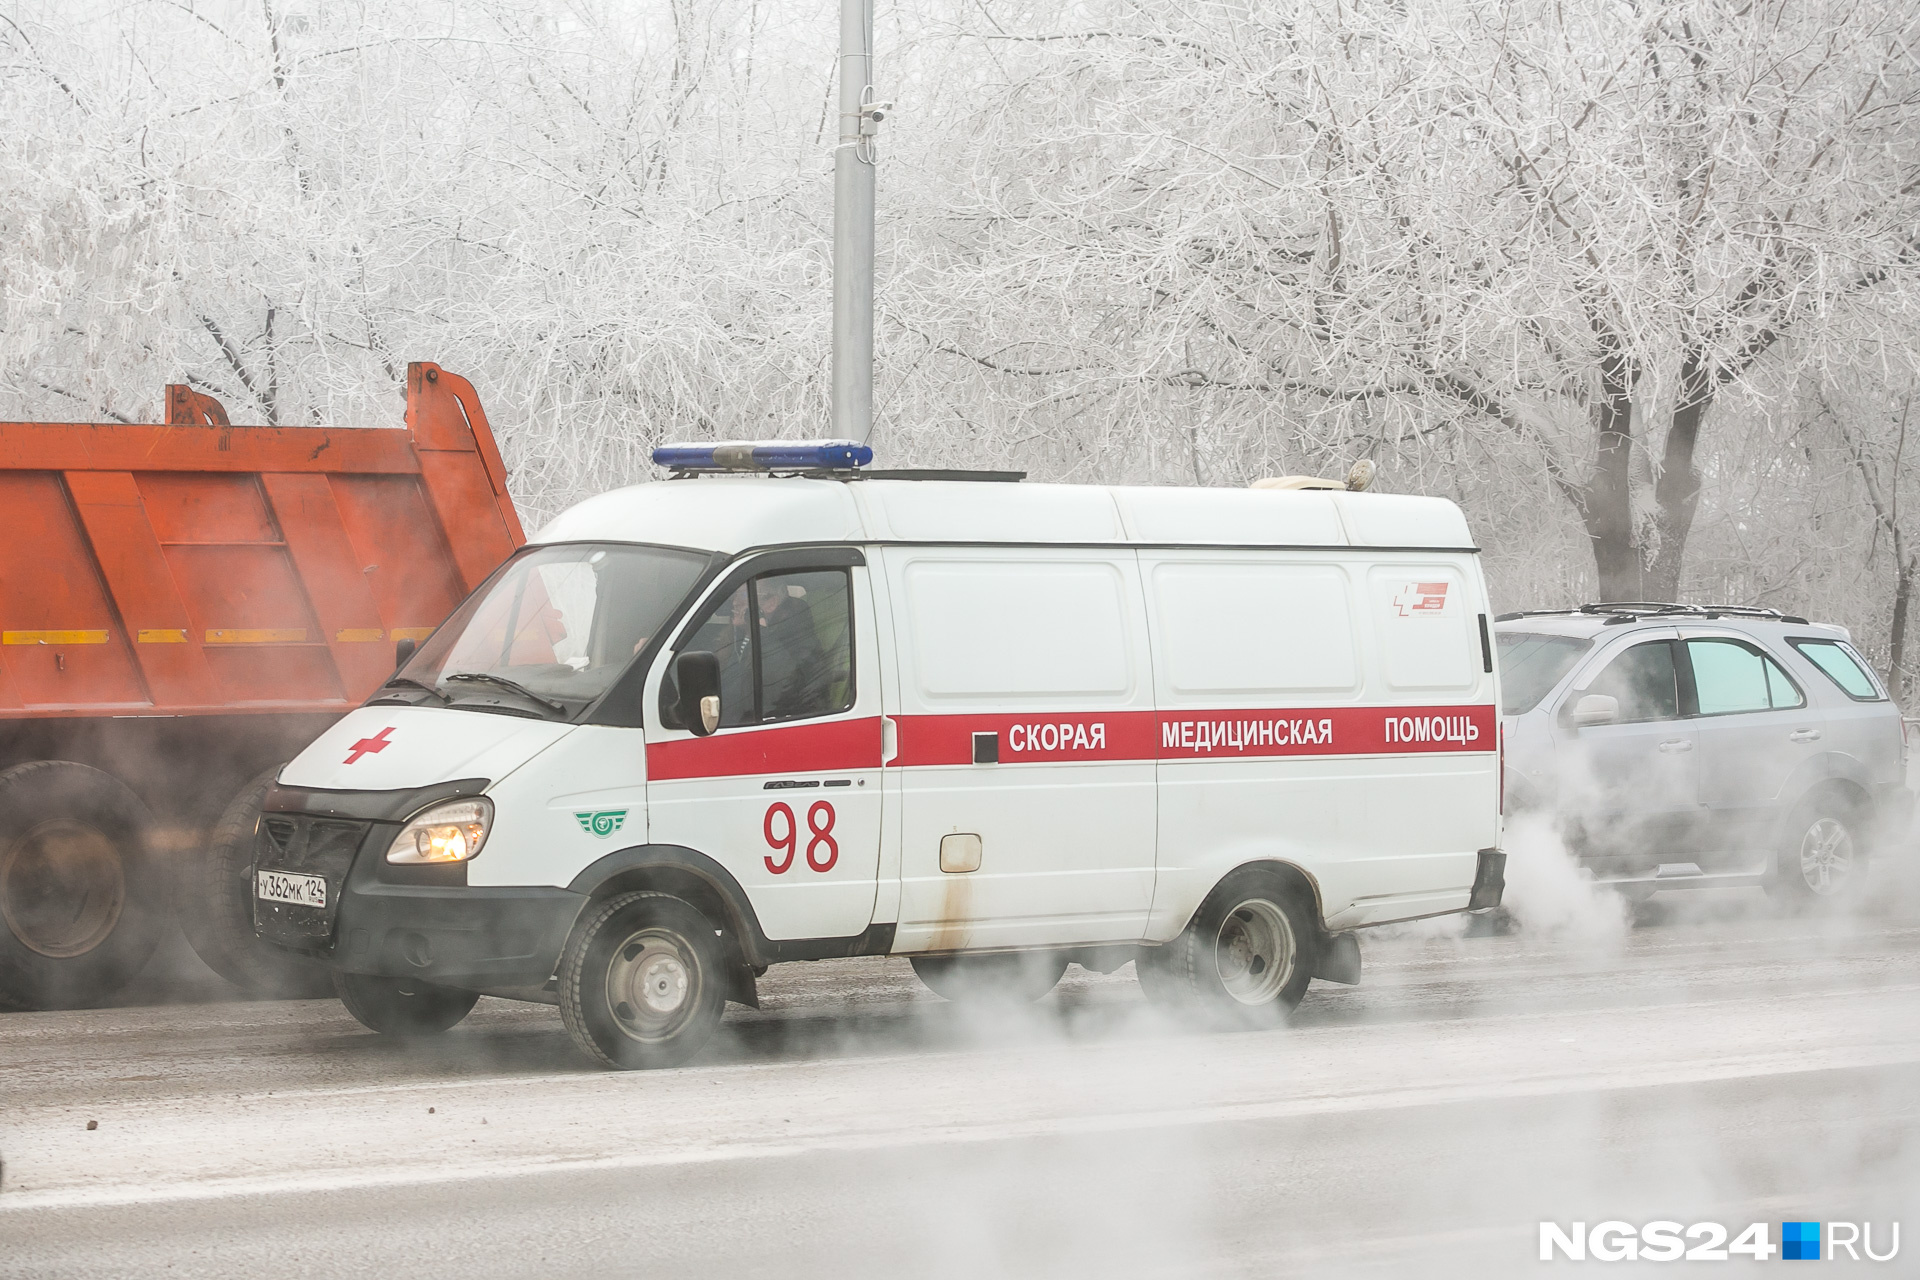 В Красноярске трехлетний мальчик умер в машине скорой помощи, захлебнувшись рвотой